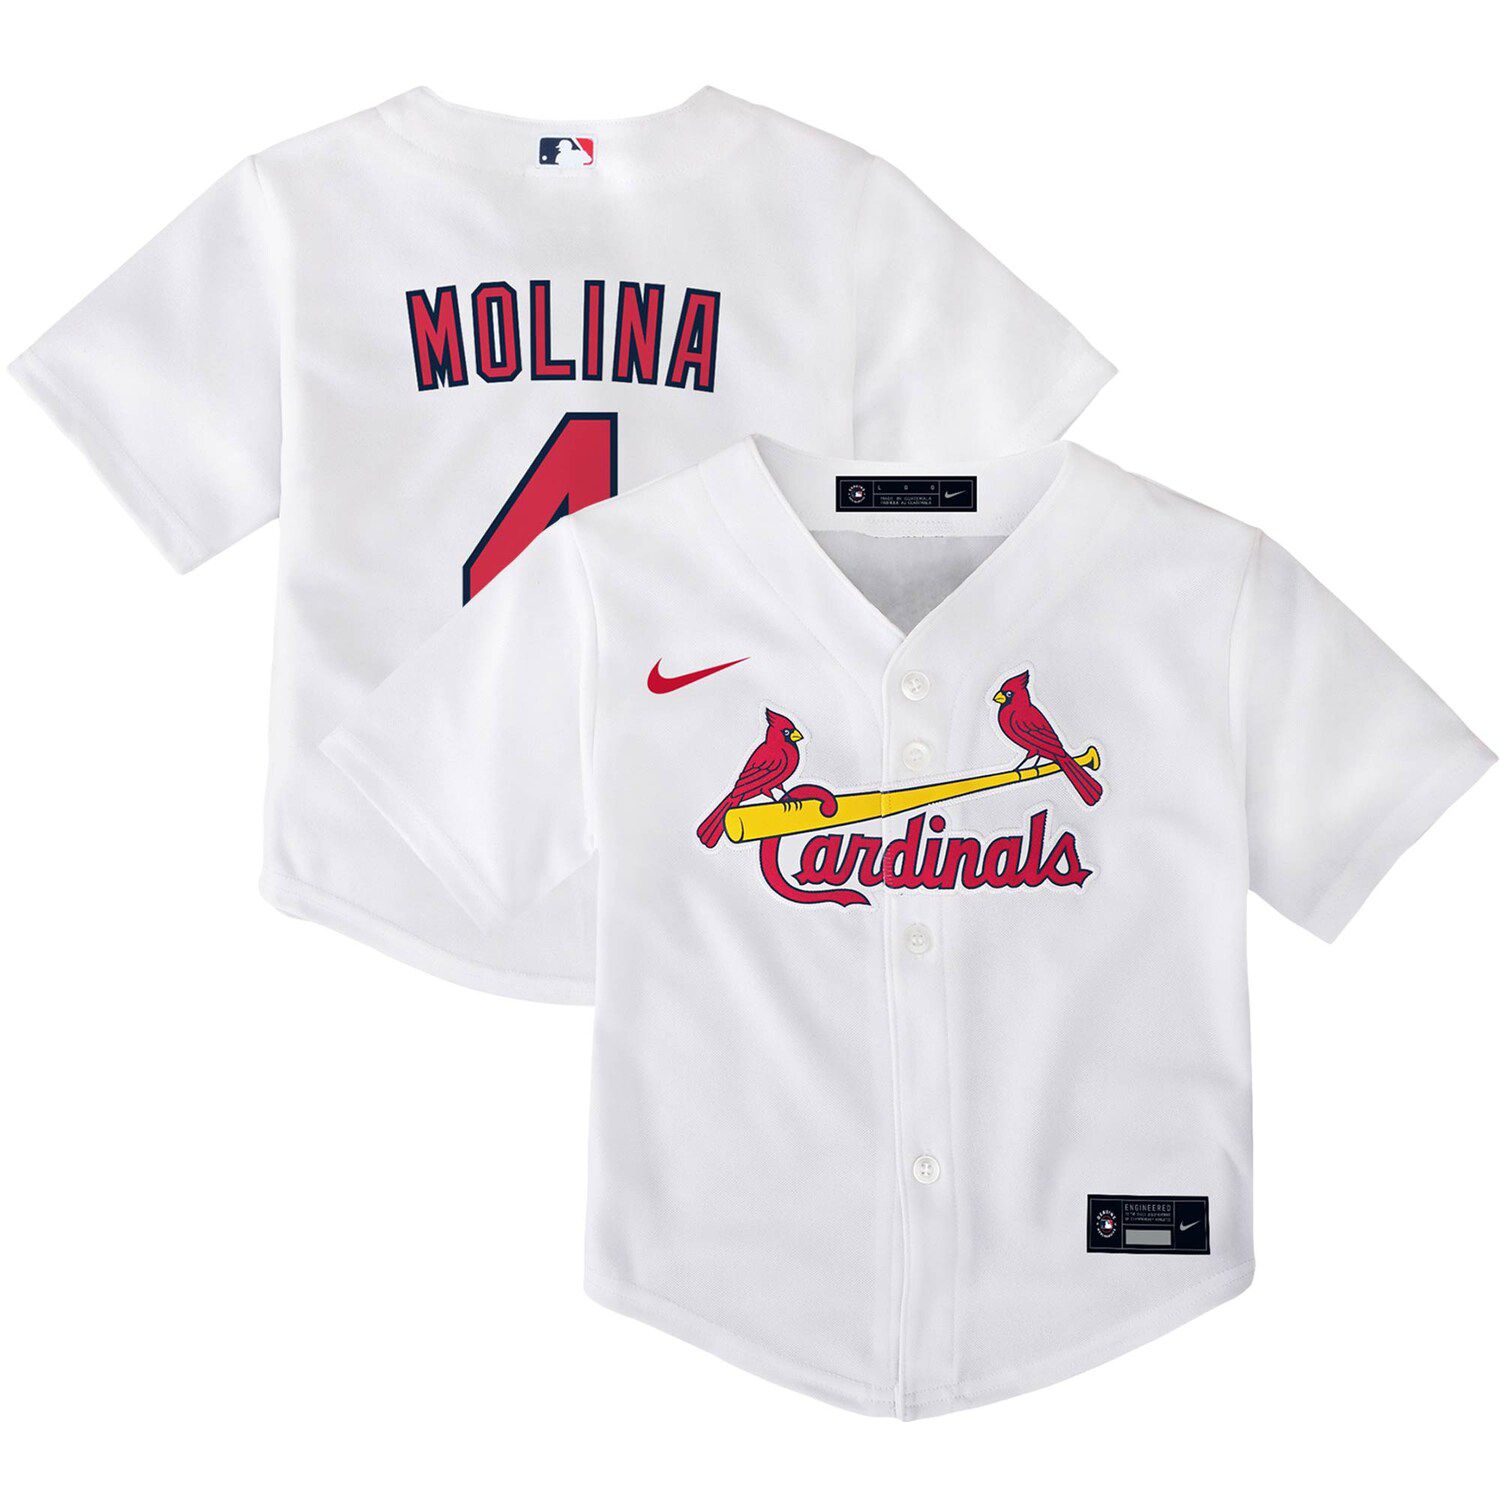 st louis cardinals toddler jersey